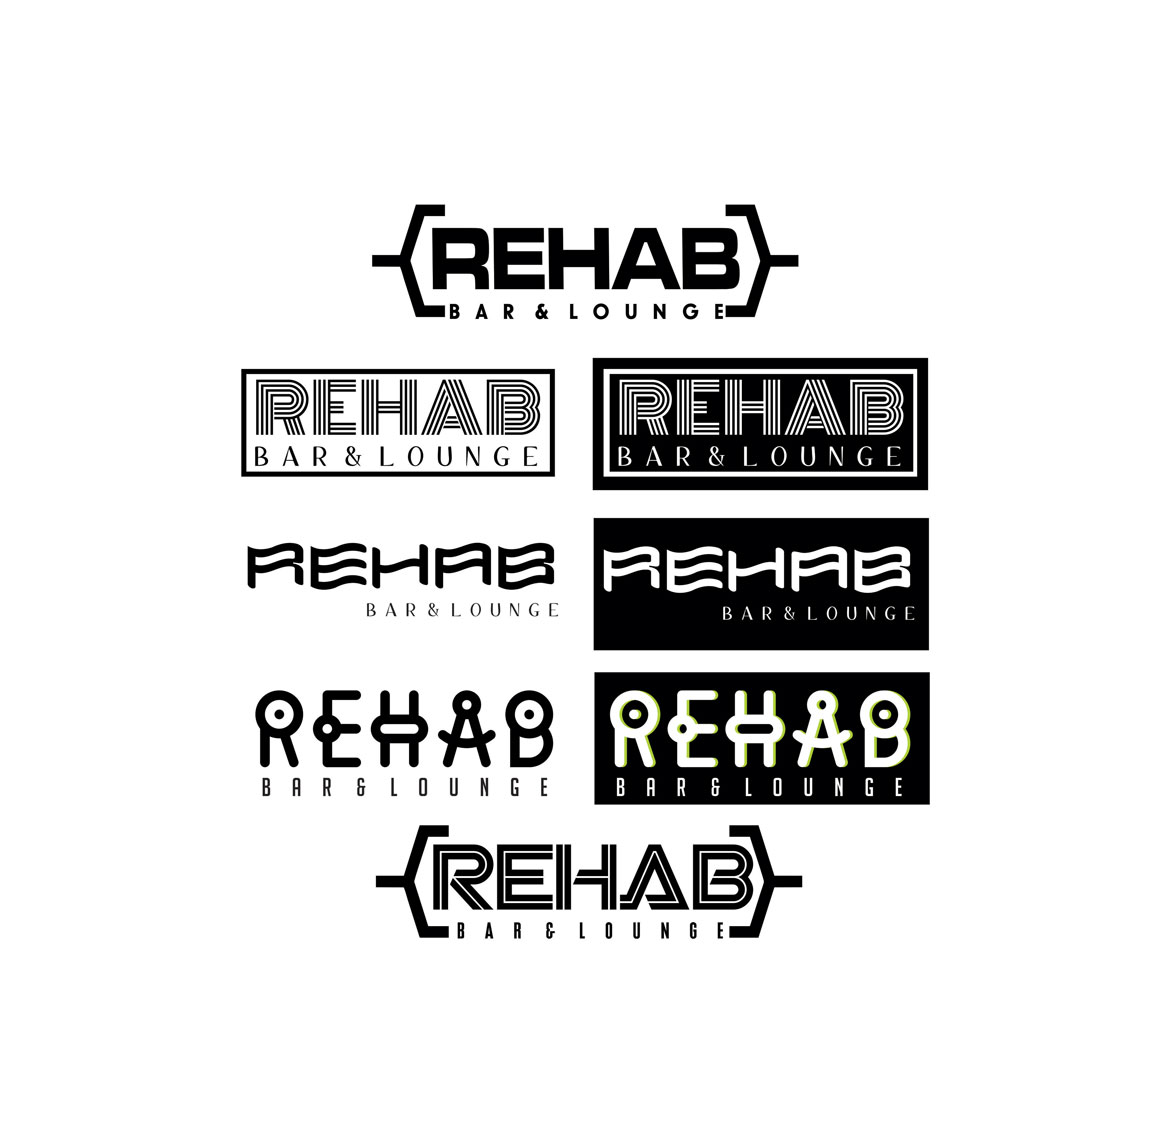 Rehab-logos